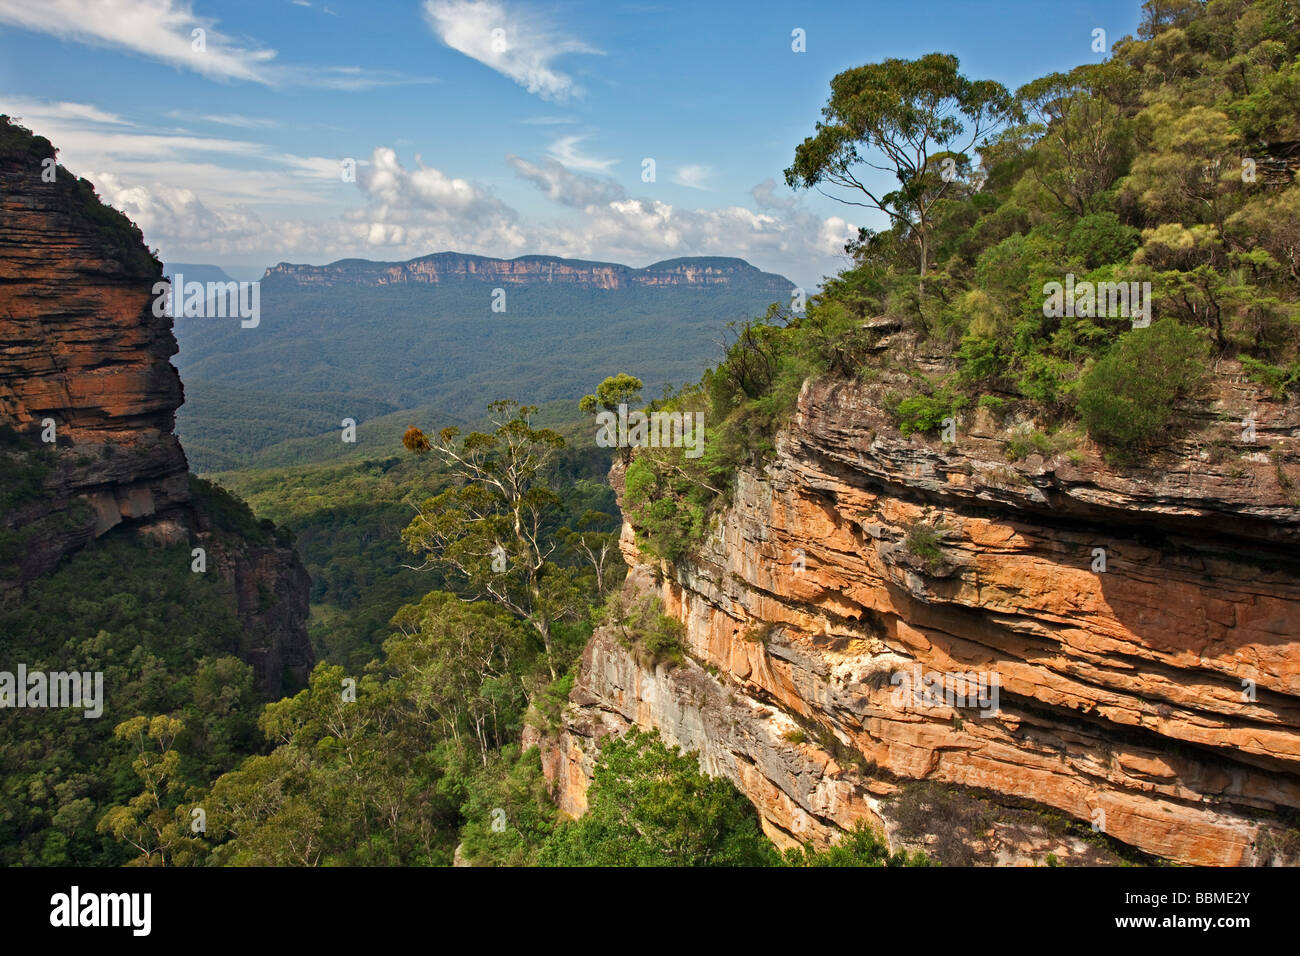 Australia - Nueva Gales del Sur. Una vista del Valle Jamison en las Montañas Azules del Prince Henry Cliff Walk. Foto de stock